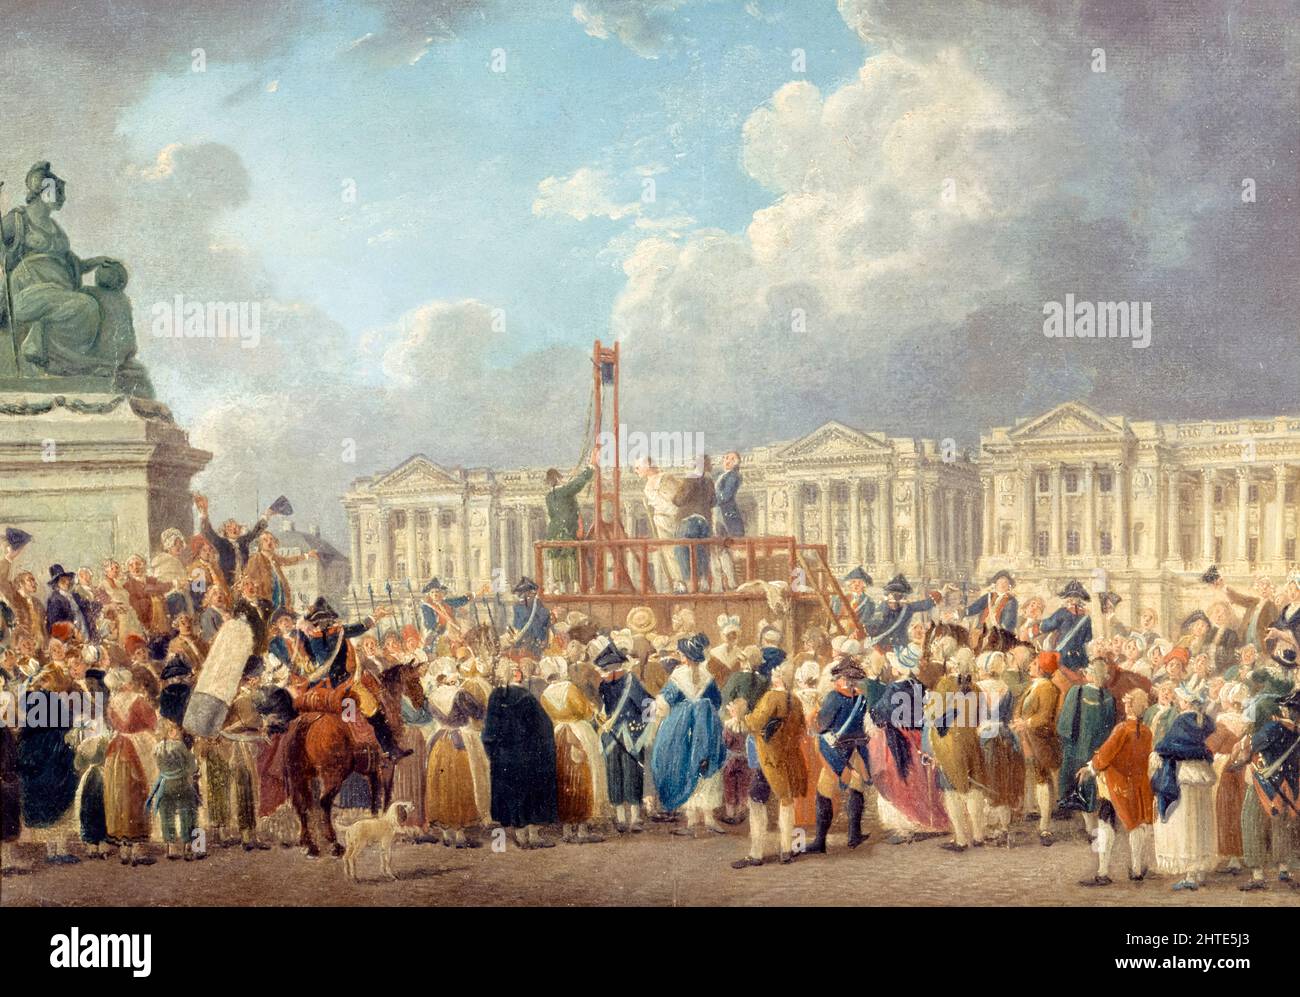 La Révolution française : exécution publique par guillotine à la place de la Révolution, Paris, France, peinture de Pierre-Antoine Demachy, 1793 Banque D'Images